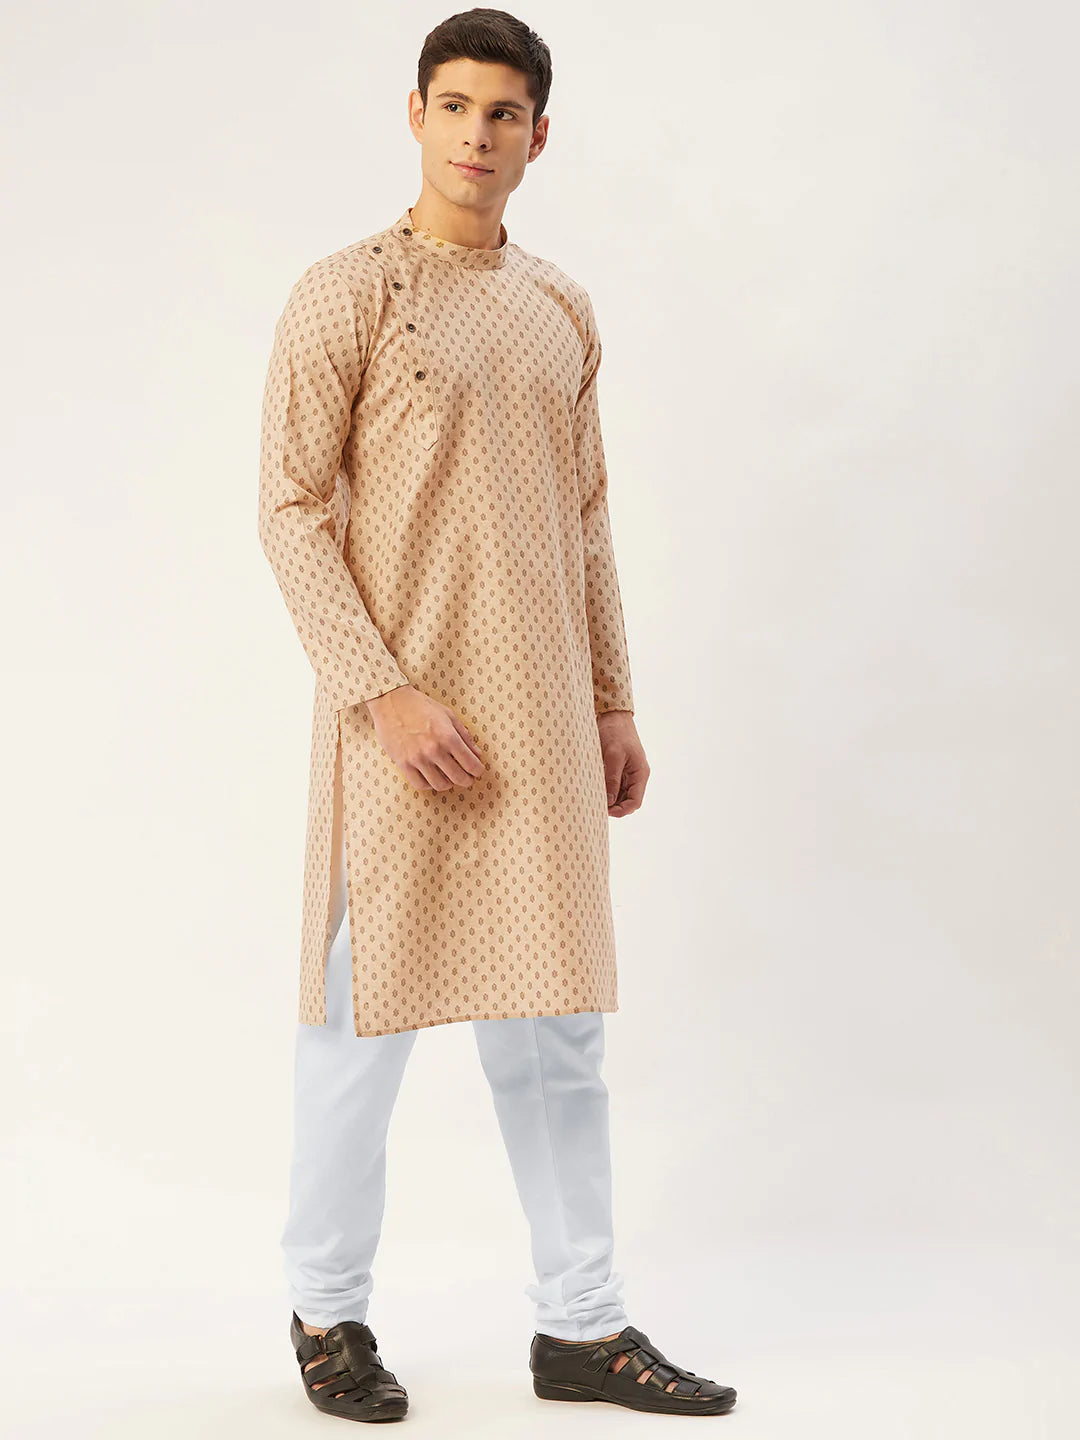 Jompers Men's Beige Cotton printed kurta Pyjama Set ( JOKP 652 Beige )